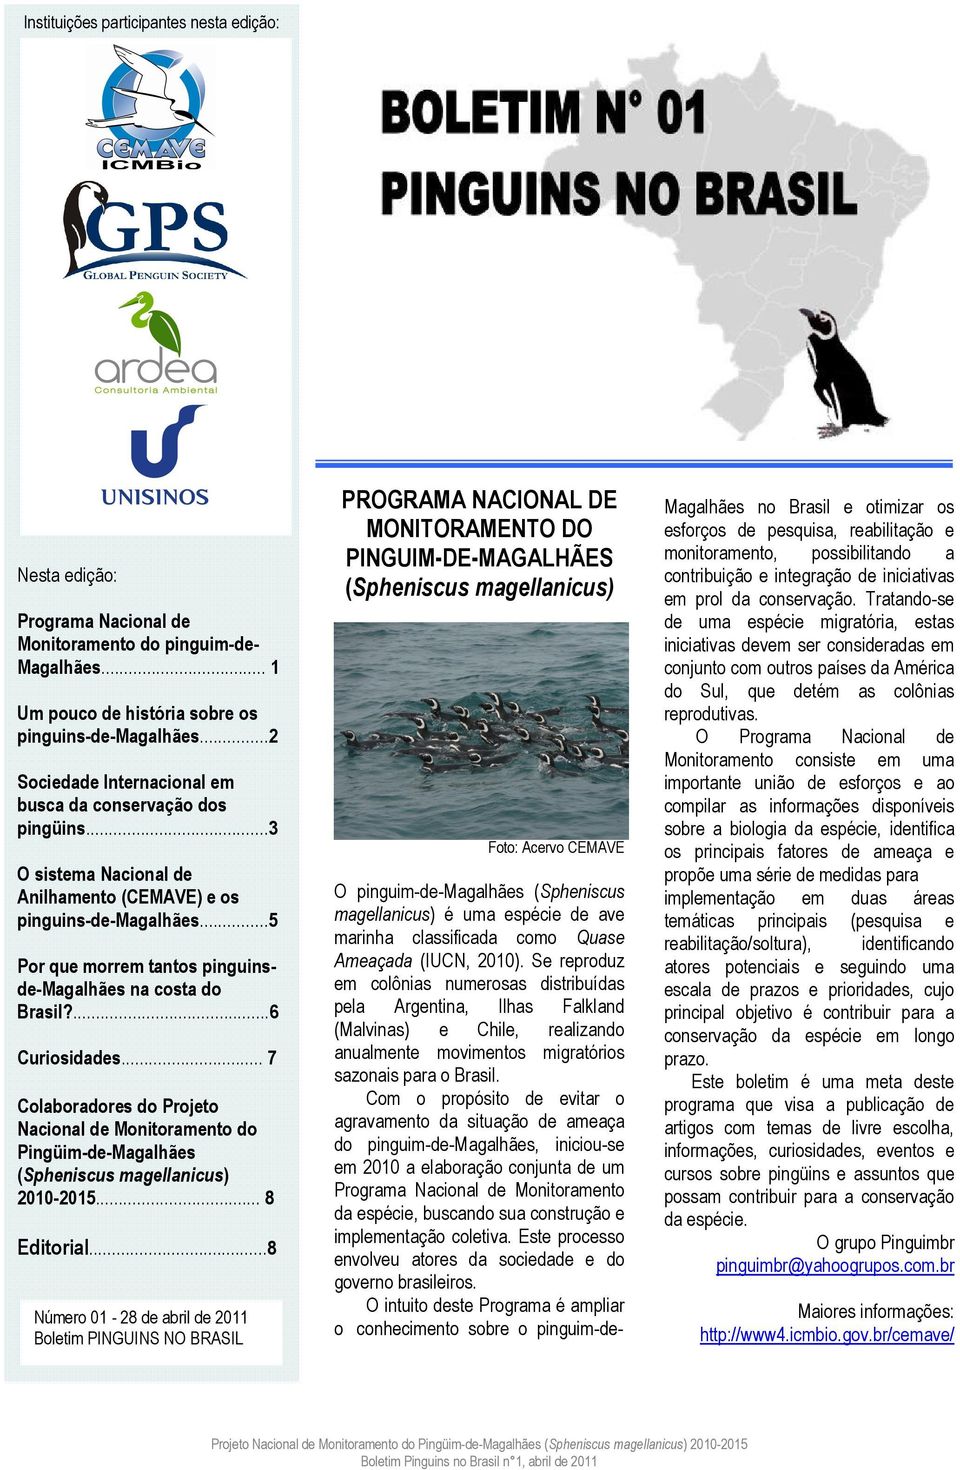 ..5 Por que morrem tantos pinguinsde-magalhães na costa do Brasil?...6 Curiosidades... 7 Colaboradores do Projeto Nacional de Monitoramento do Pingüim-de-Magalhães (Spheniscus magellanicus) 2010-2015.